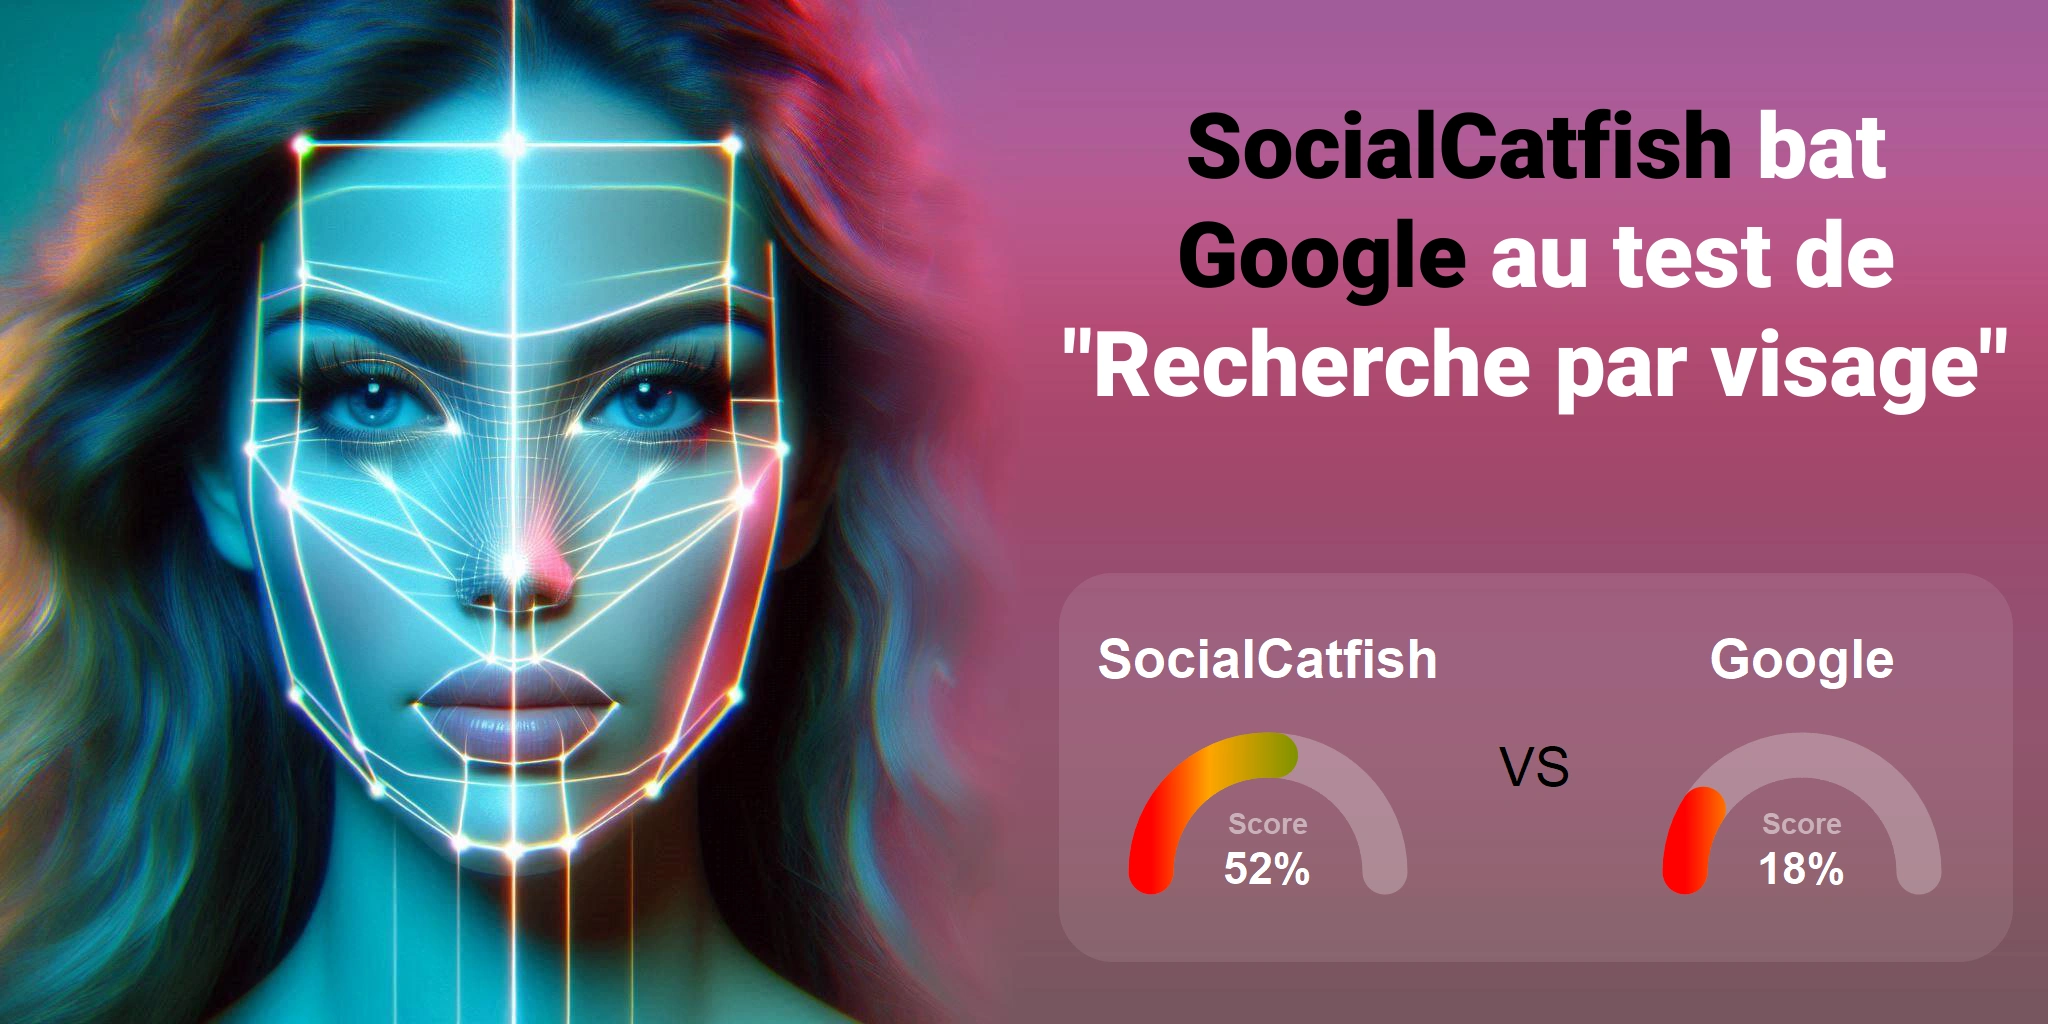 Quel est le meilleur pour la recherche faciale : <br>Google ou SocialCatfish ?